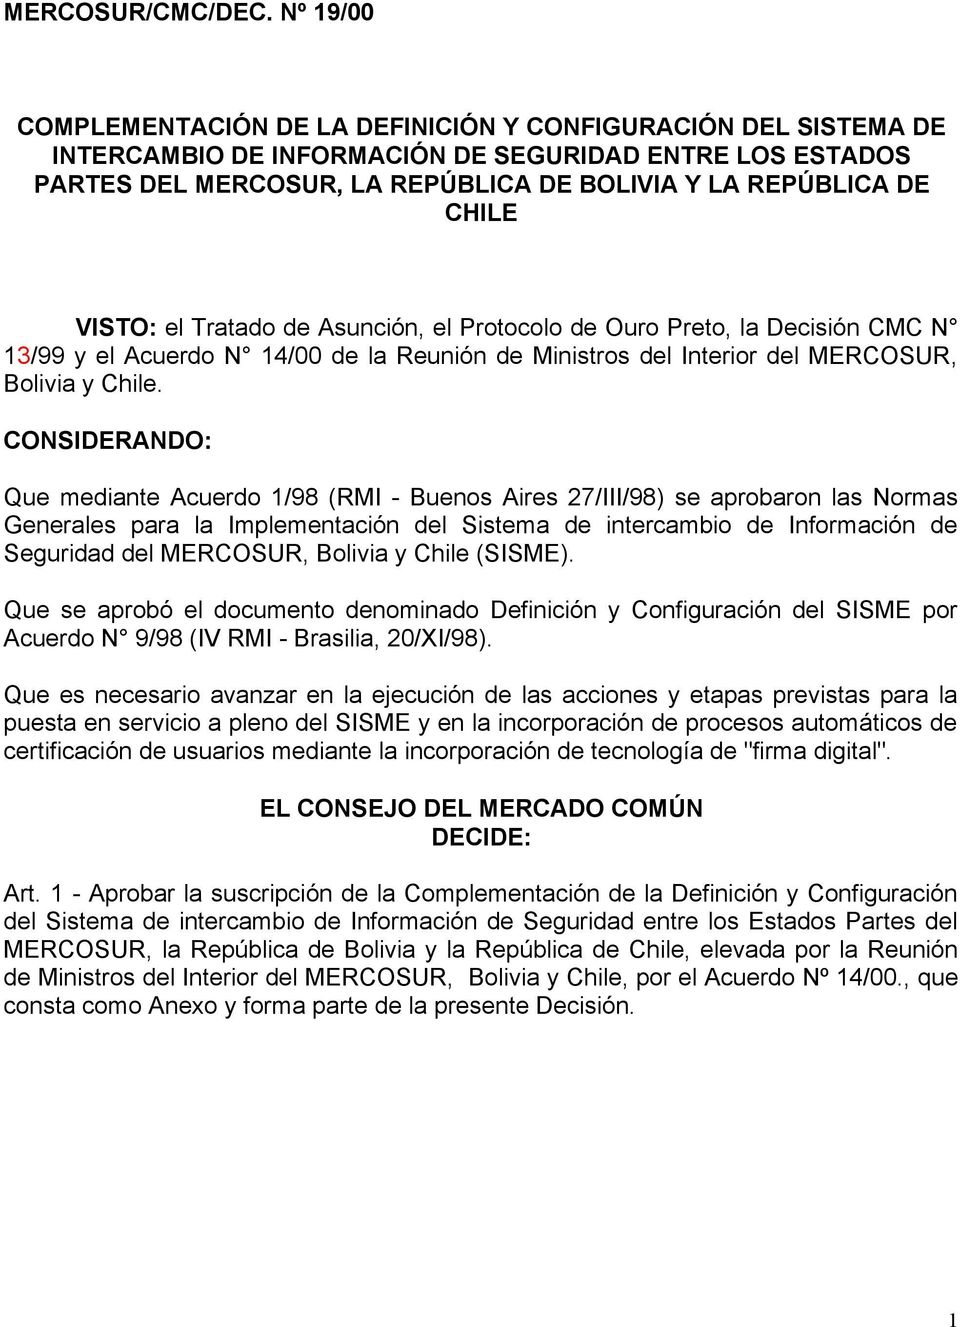 VISTO: el Tratado de Asunción, el Protocolo de Ouro Preto, la Decisión CMC N 13/99 y el Acuerdo N 14/00 de la Reunión de Ministros del Interior del MERCOSUR, Bolivia y Chile.